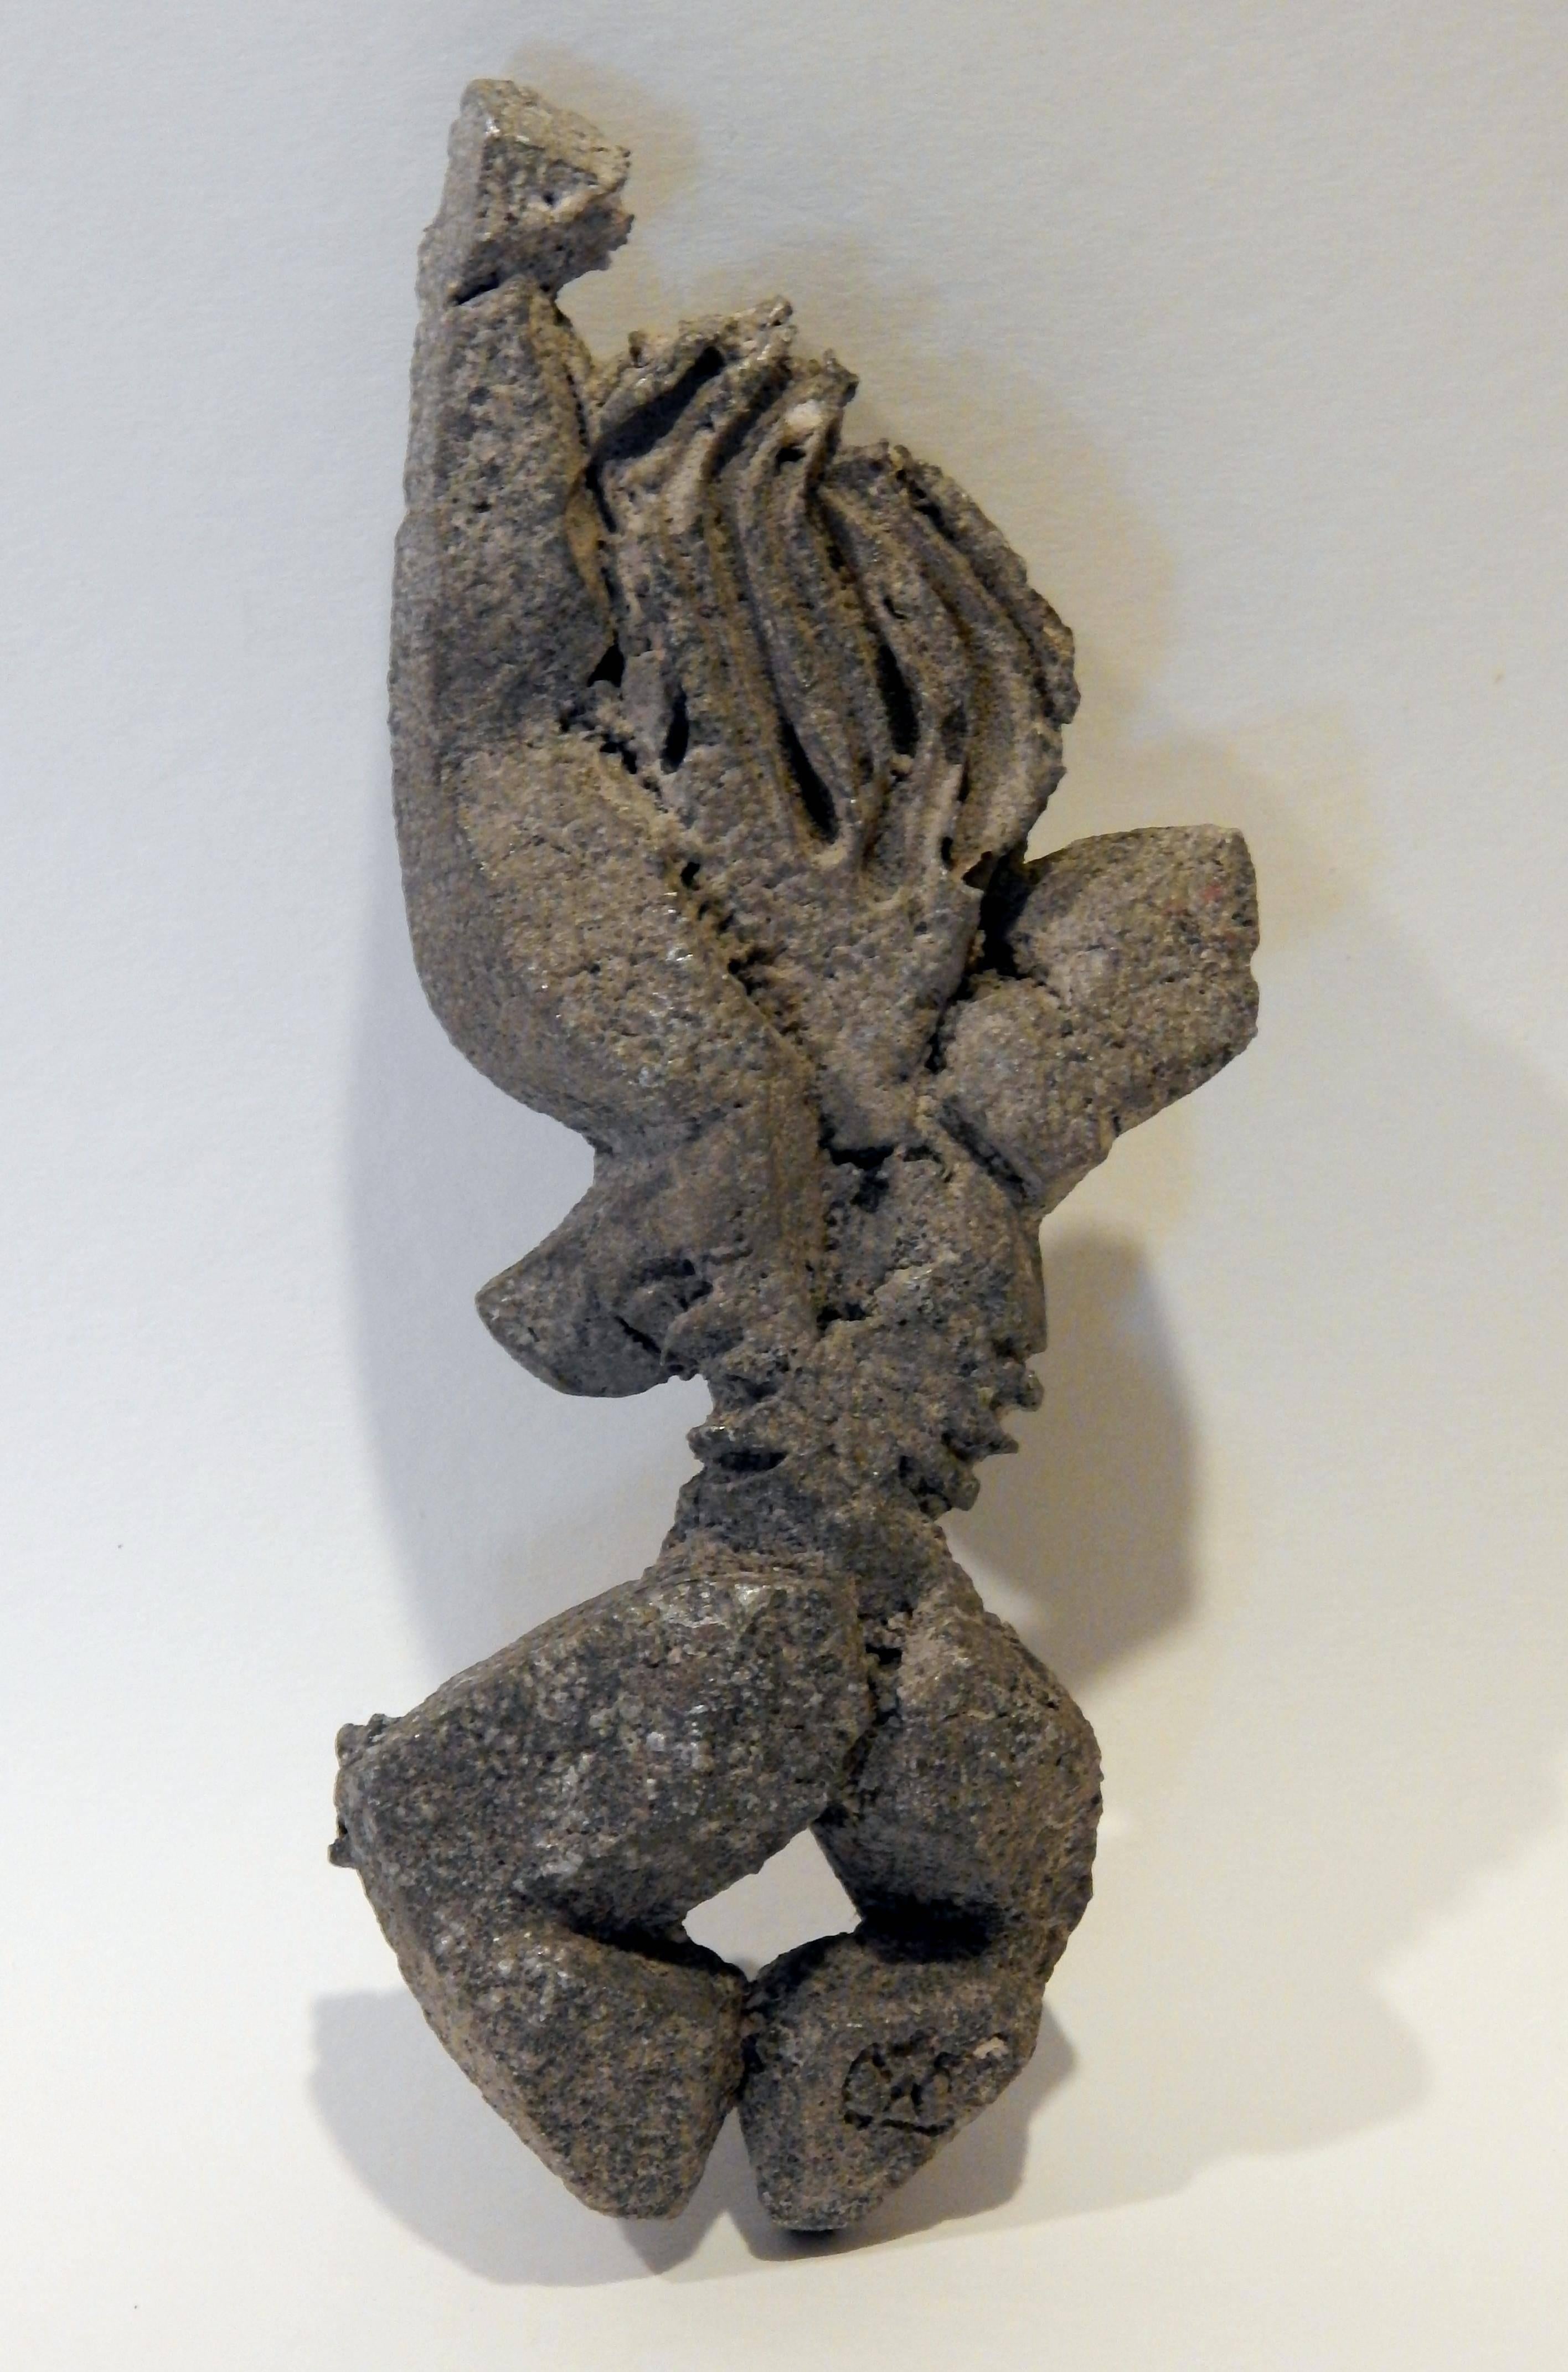 Sculpture de nu en fonte d'aluminium de l'architecte et artiste Paolo Soleri (1910-2013).
Soleri est bien connu pour sa communauté expérimentale, Arcosanti, située juste au nord de Phoenix, où
Ses cloches à vent en fonte sont encore fabriquées